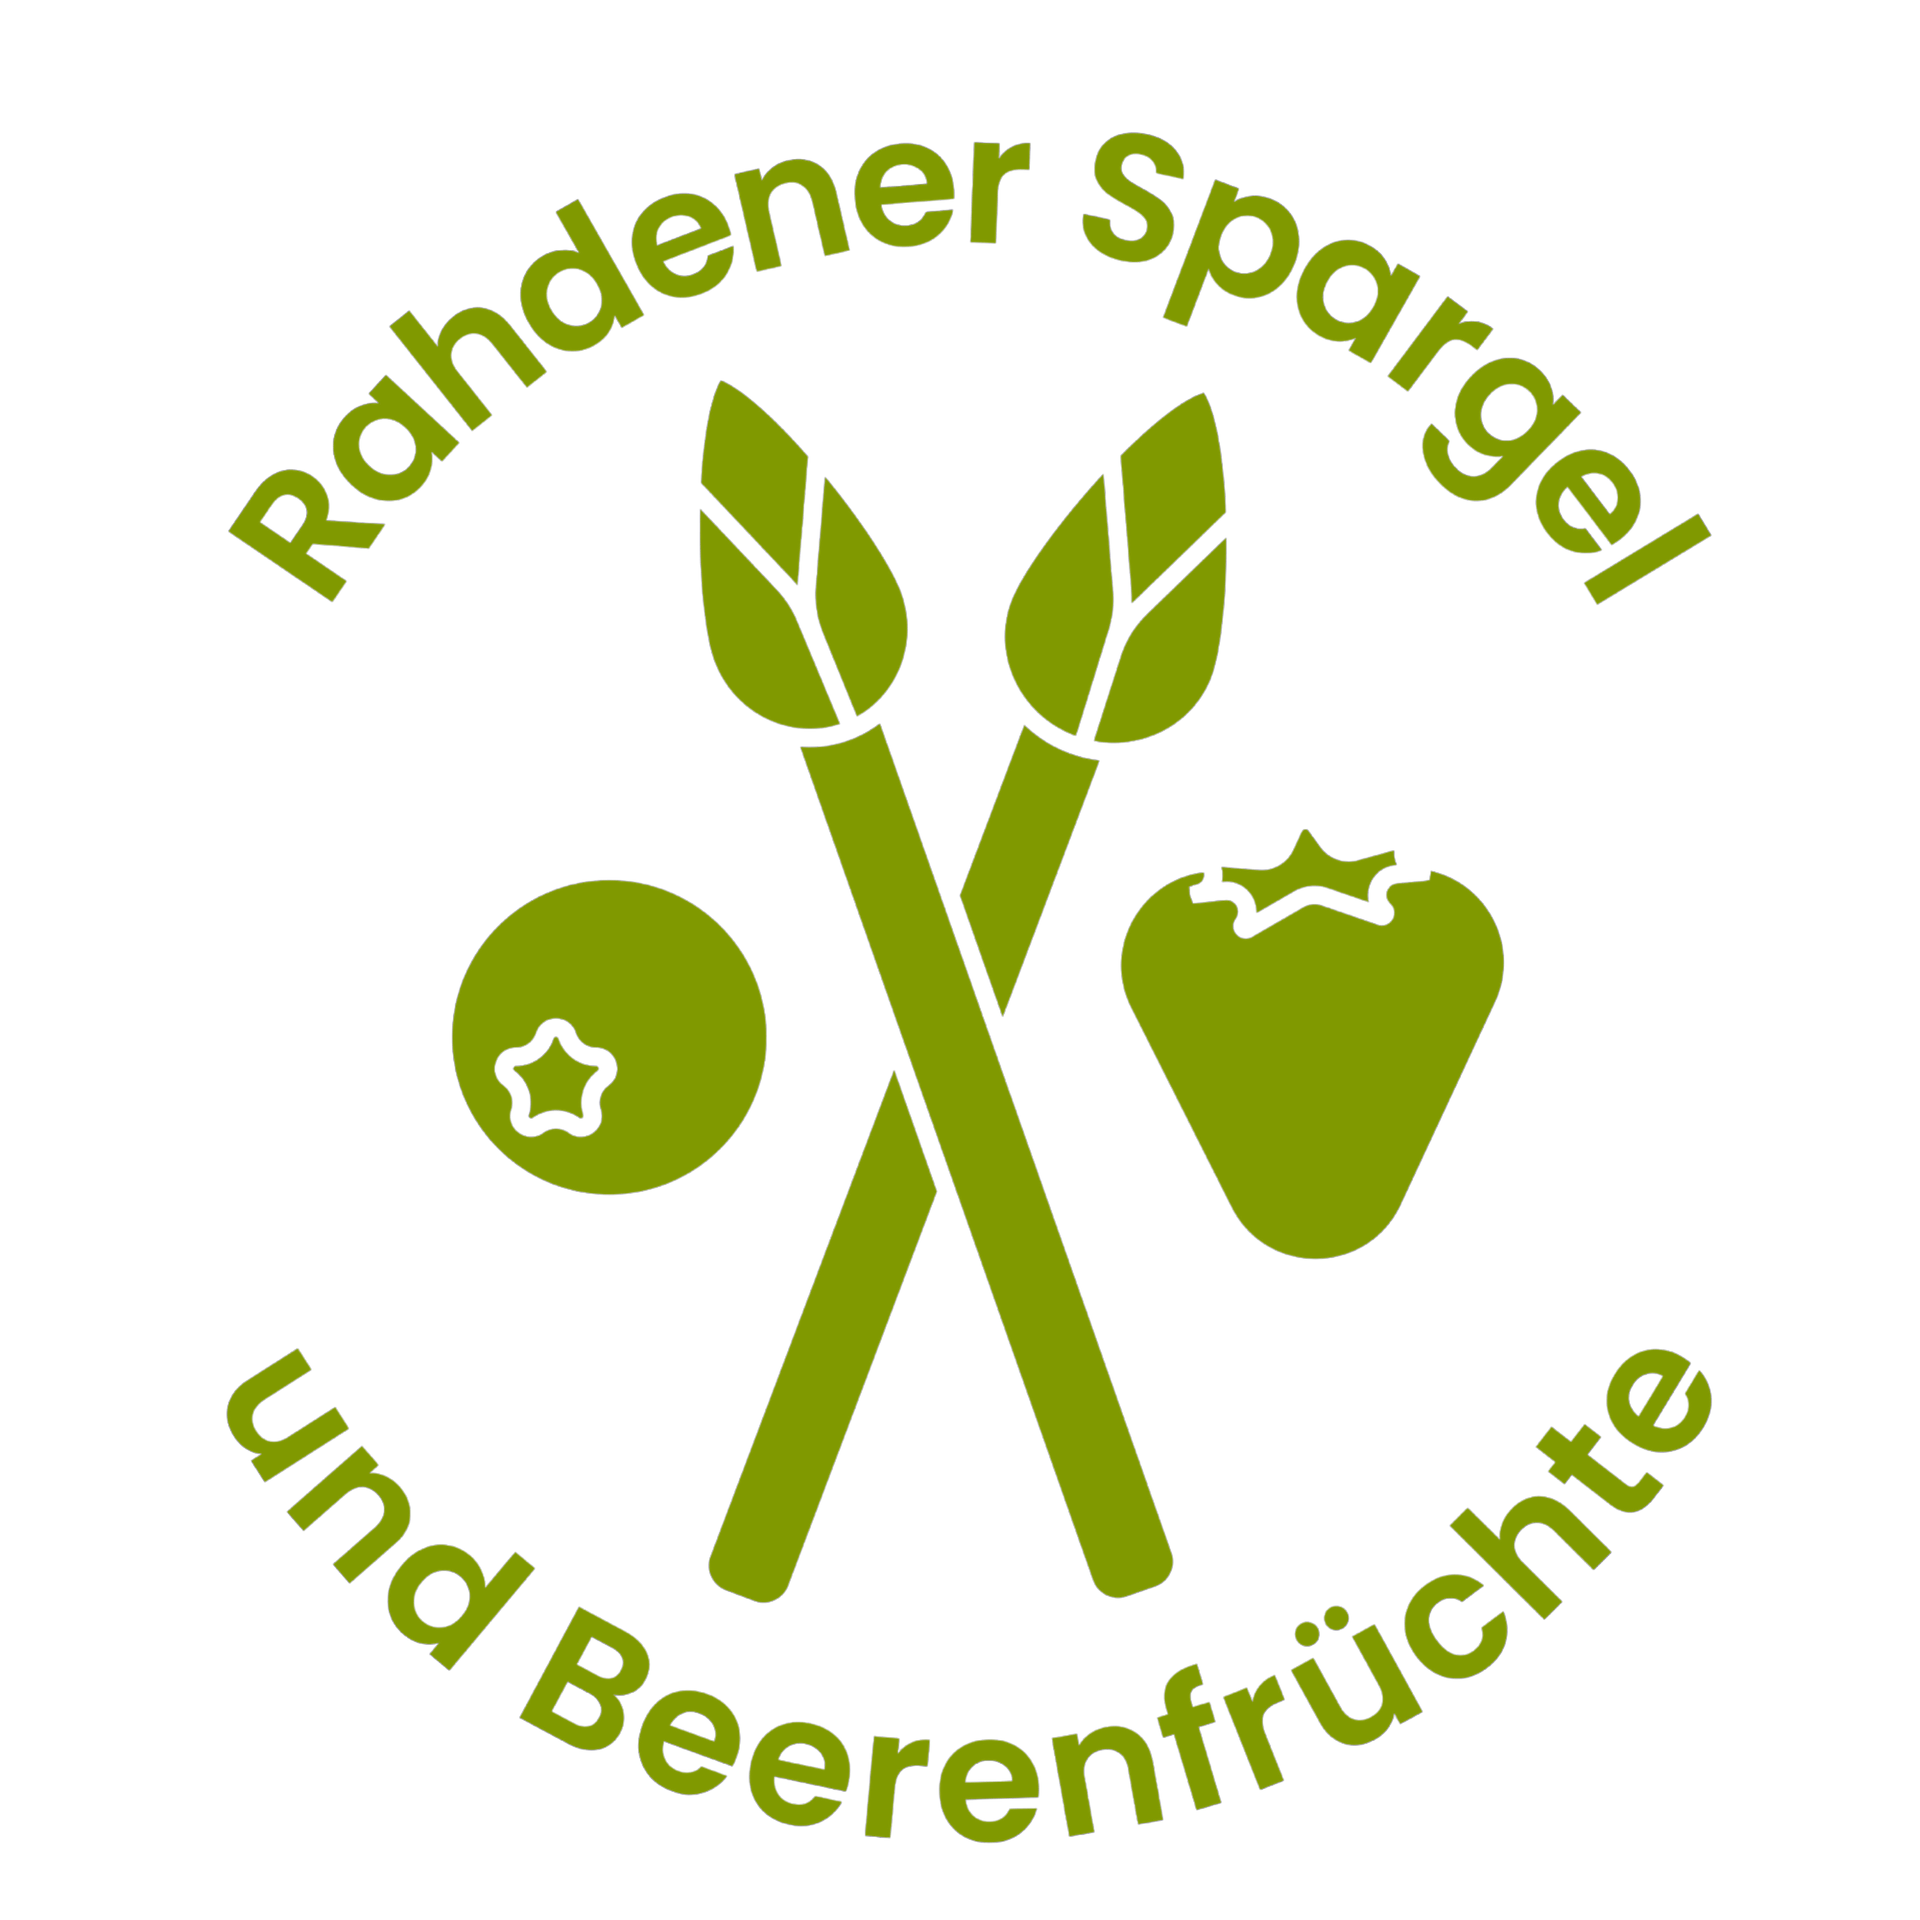 Rahdener Spargel & Beerenfrüchte GmbH